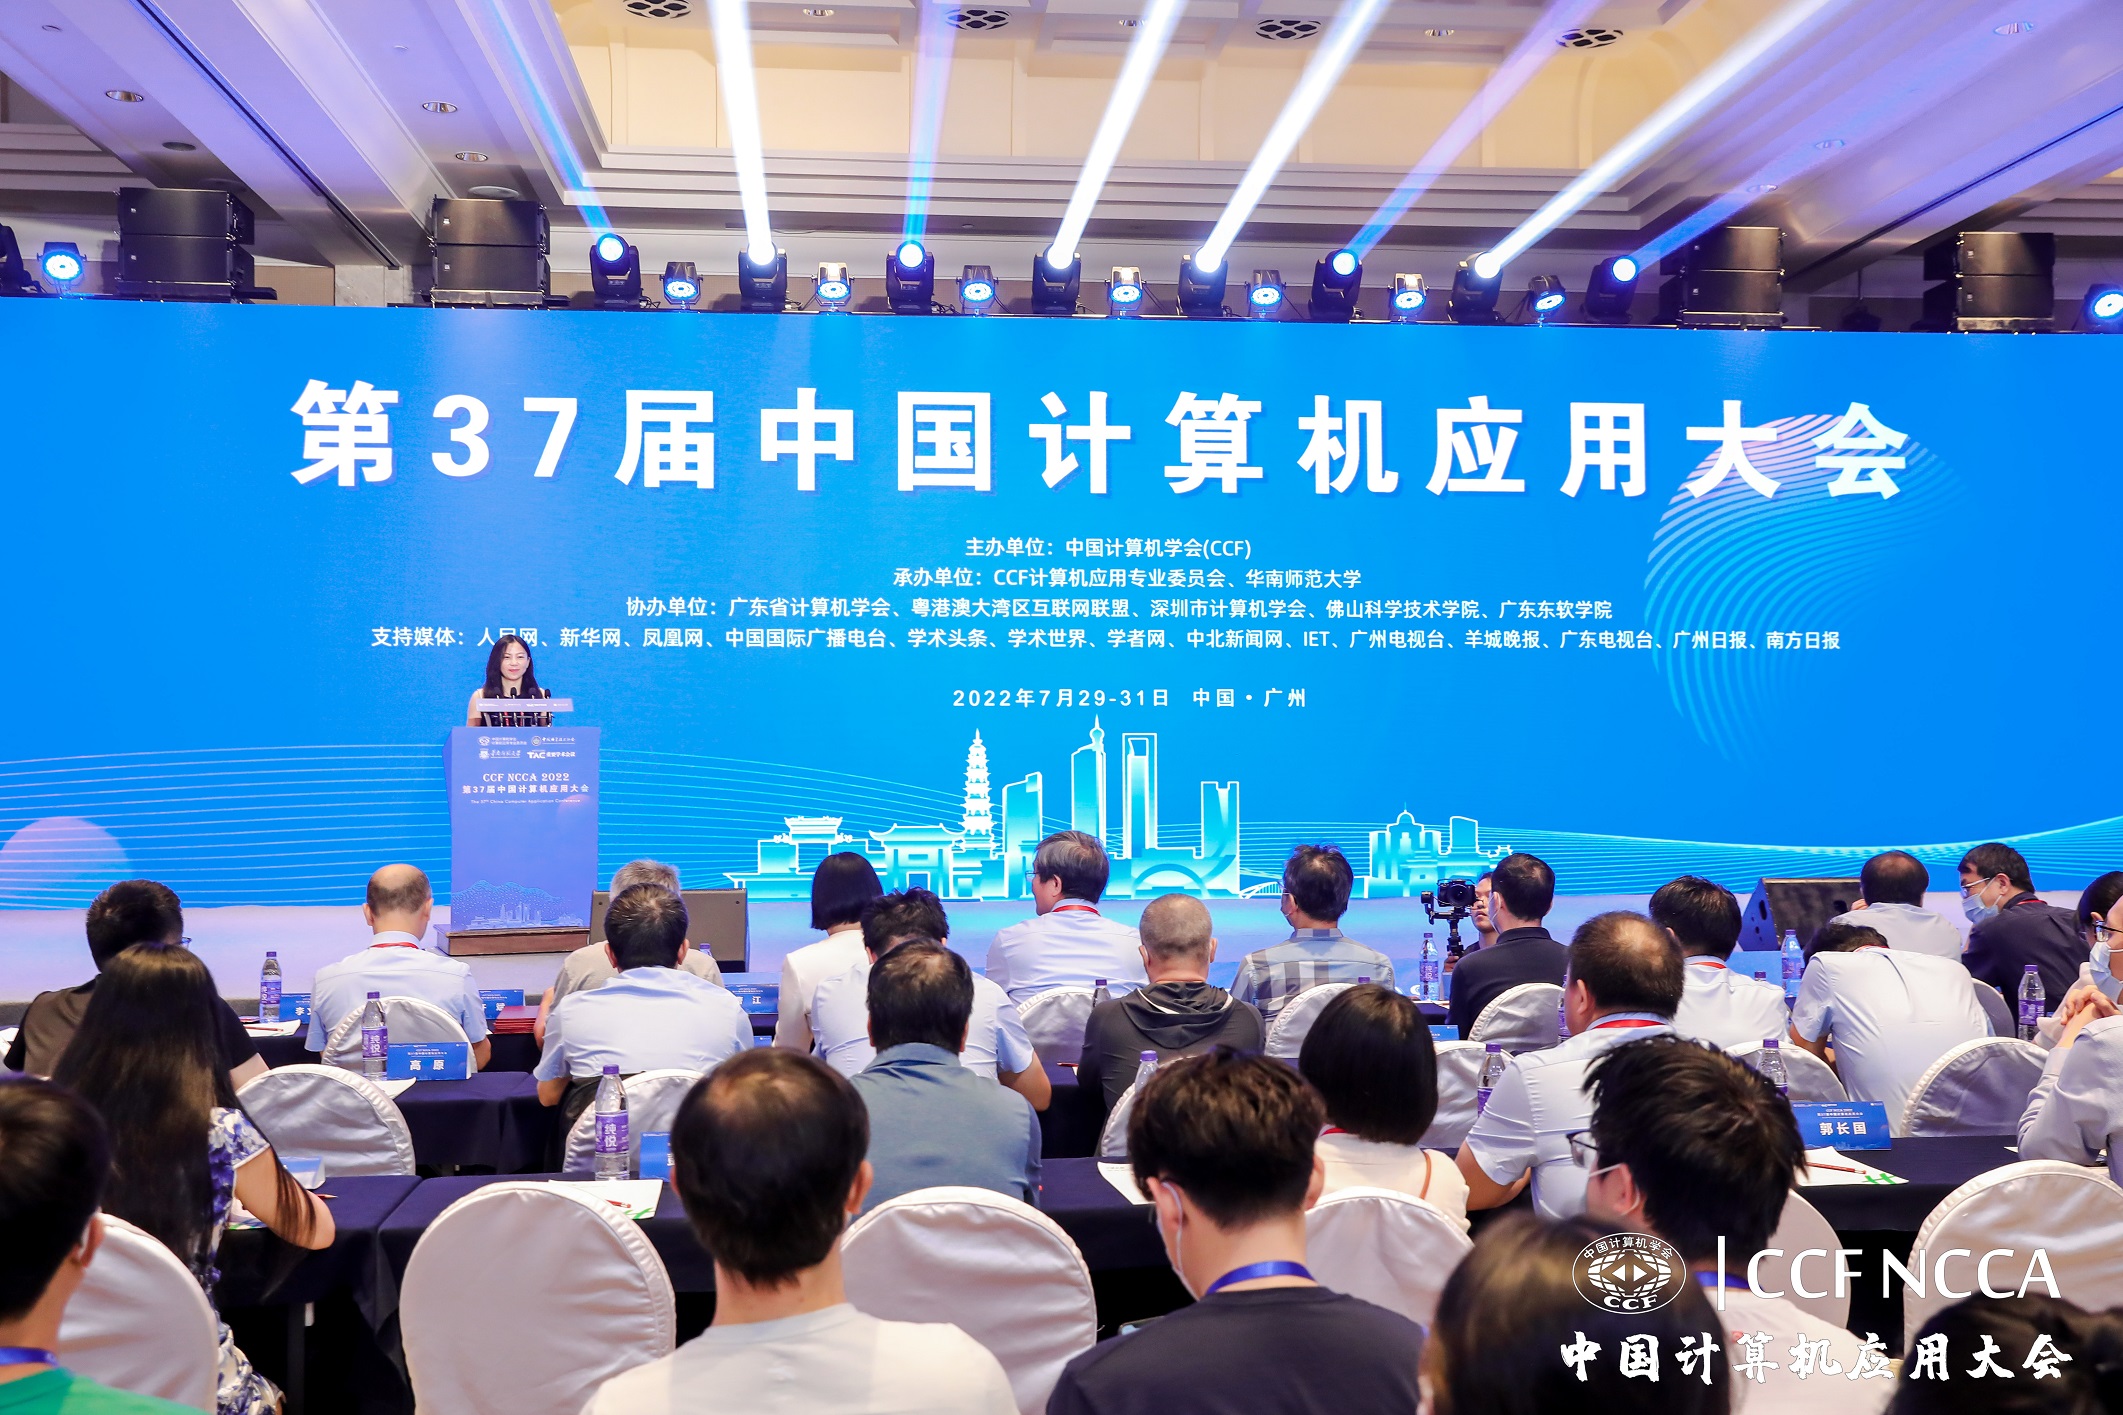 1、世界杯承办的第37届中国计算机应用大会在广州市花都区隆重举行001.jpg